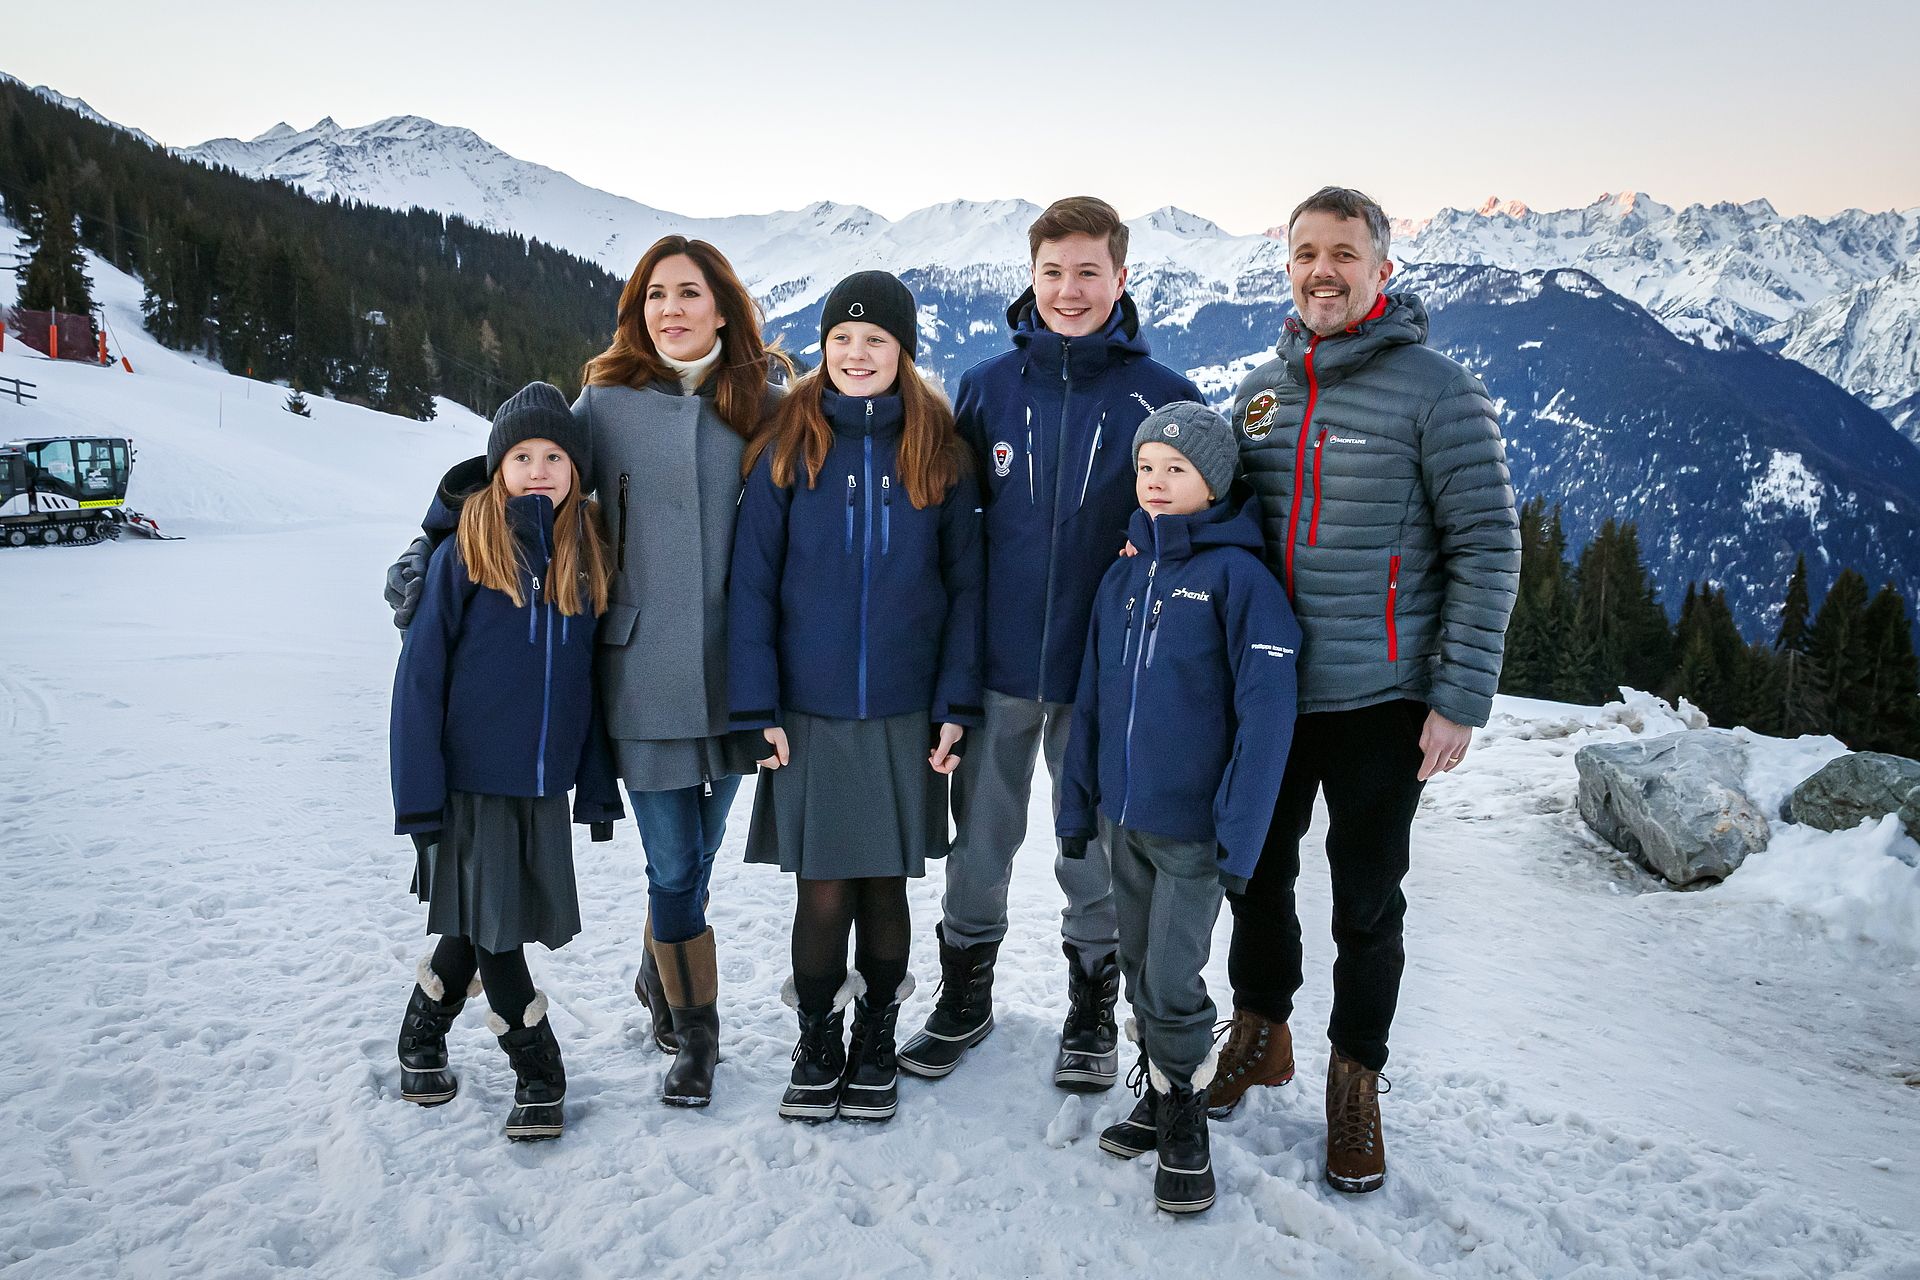 2020: De Deense koninklijke familie poseren tijdens een fotomoment in Verbier, Zwitserland.